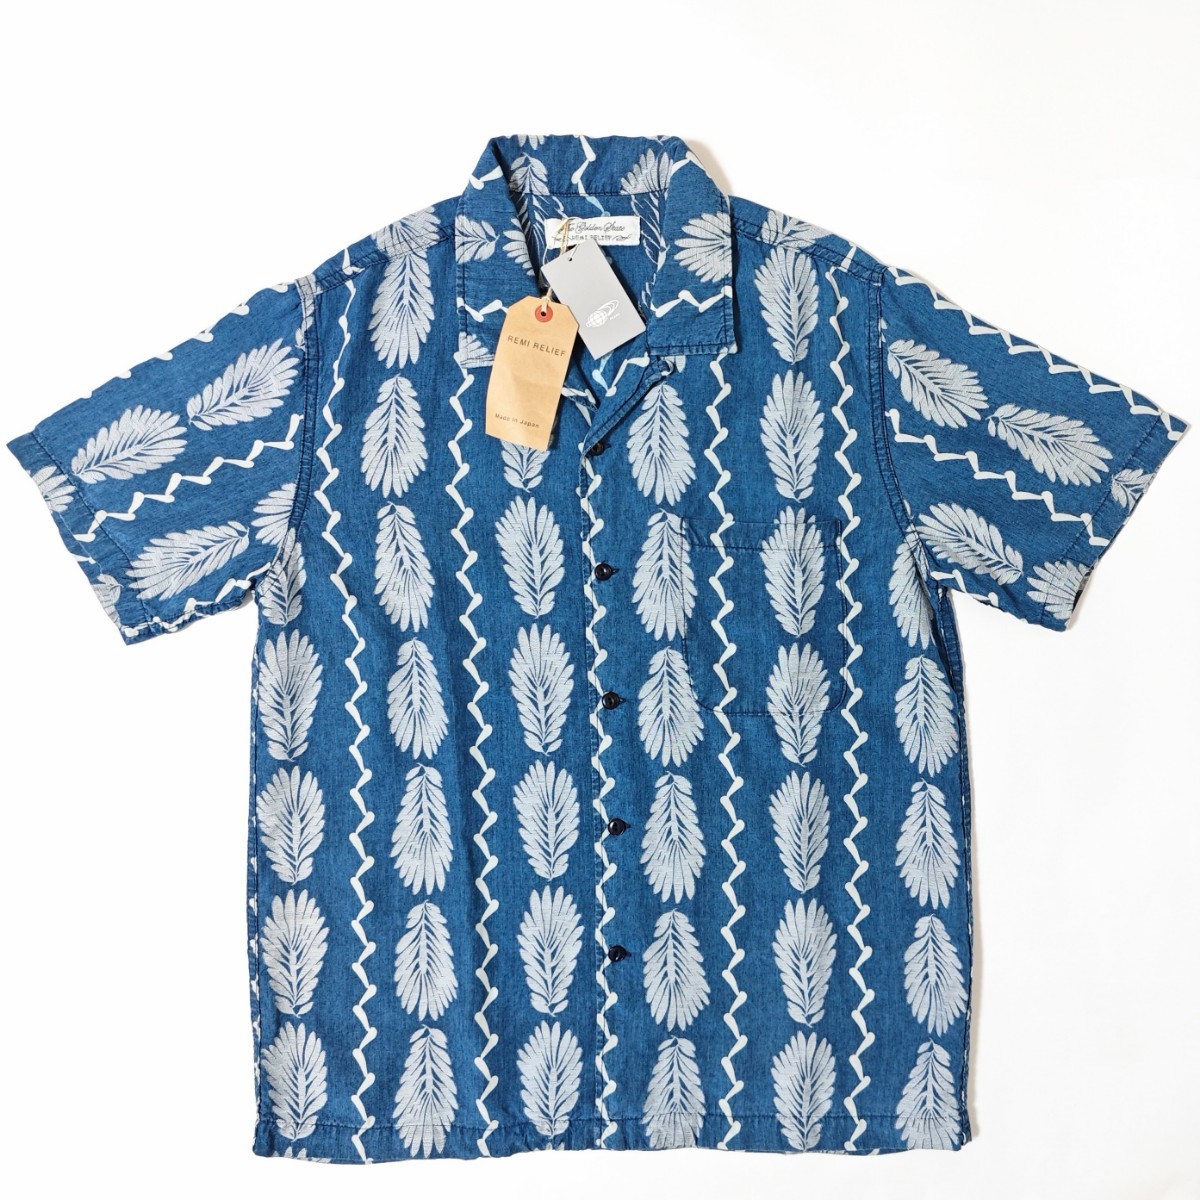 新作 BEAMS レミレリーフ 別注 コラボ オープンカラーシャツ Cut Jacquard Aloha Shirt インディゴ アロハ REMI RELIEF rrl 正規品 Lサイズ